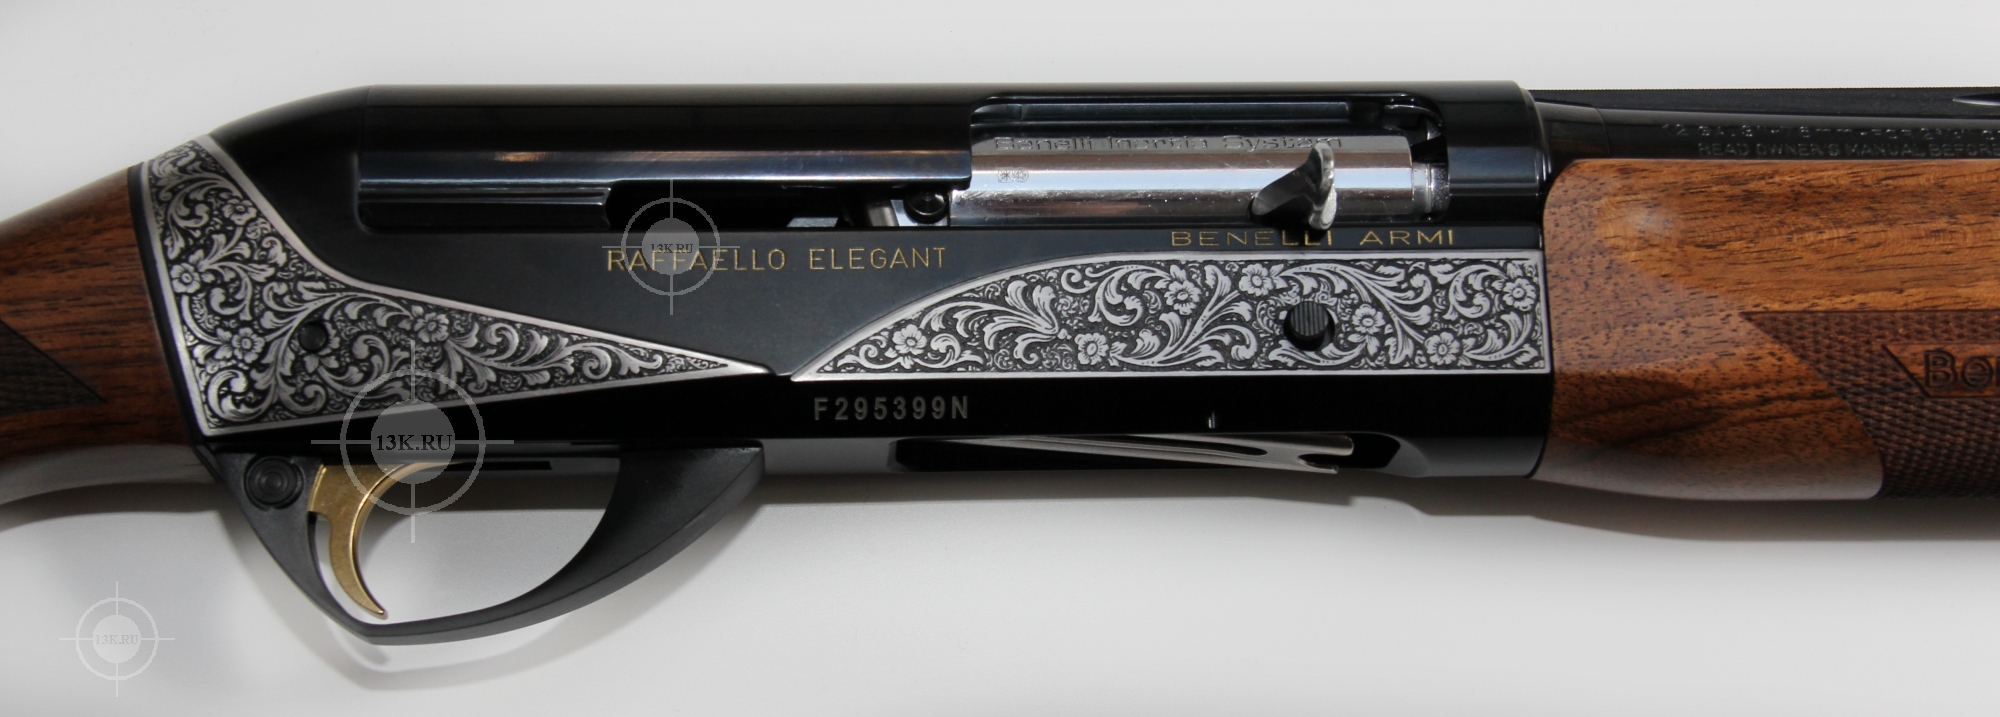 Полуавтоматическое ружье Benelli модели Raffaello Elegant отличается наличи...